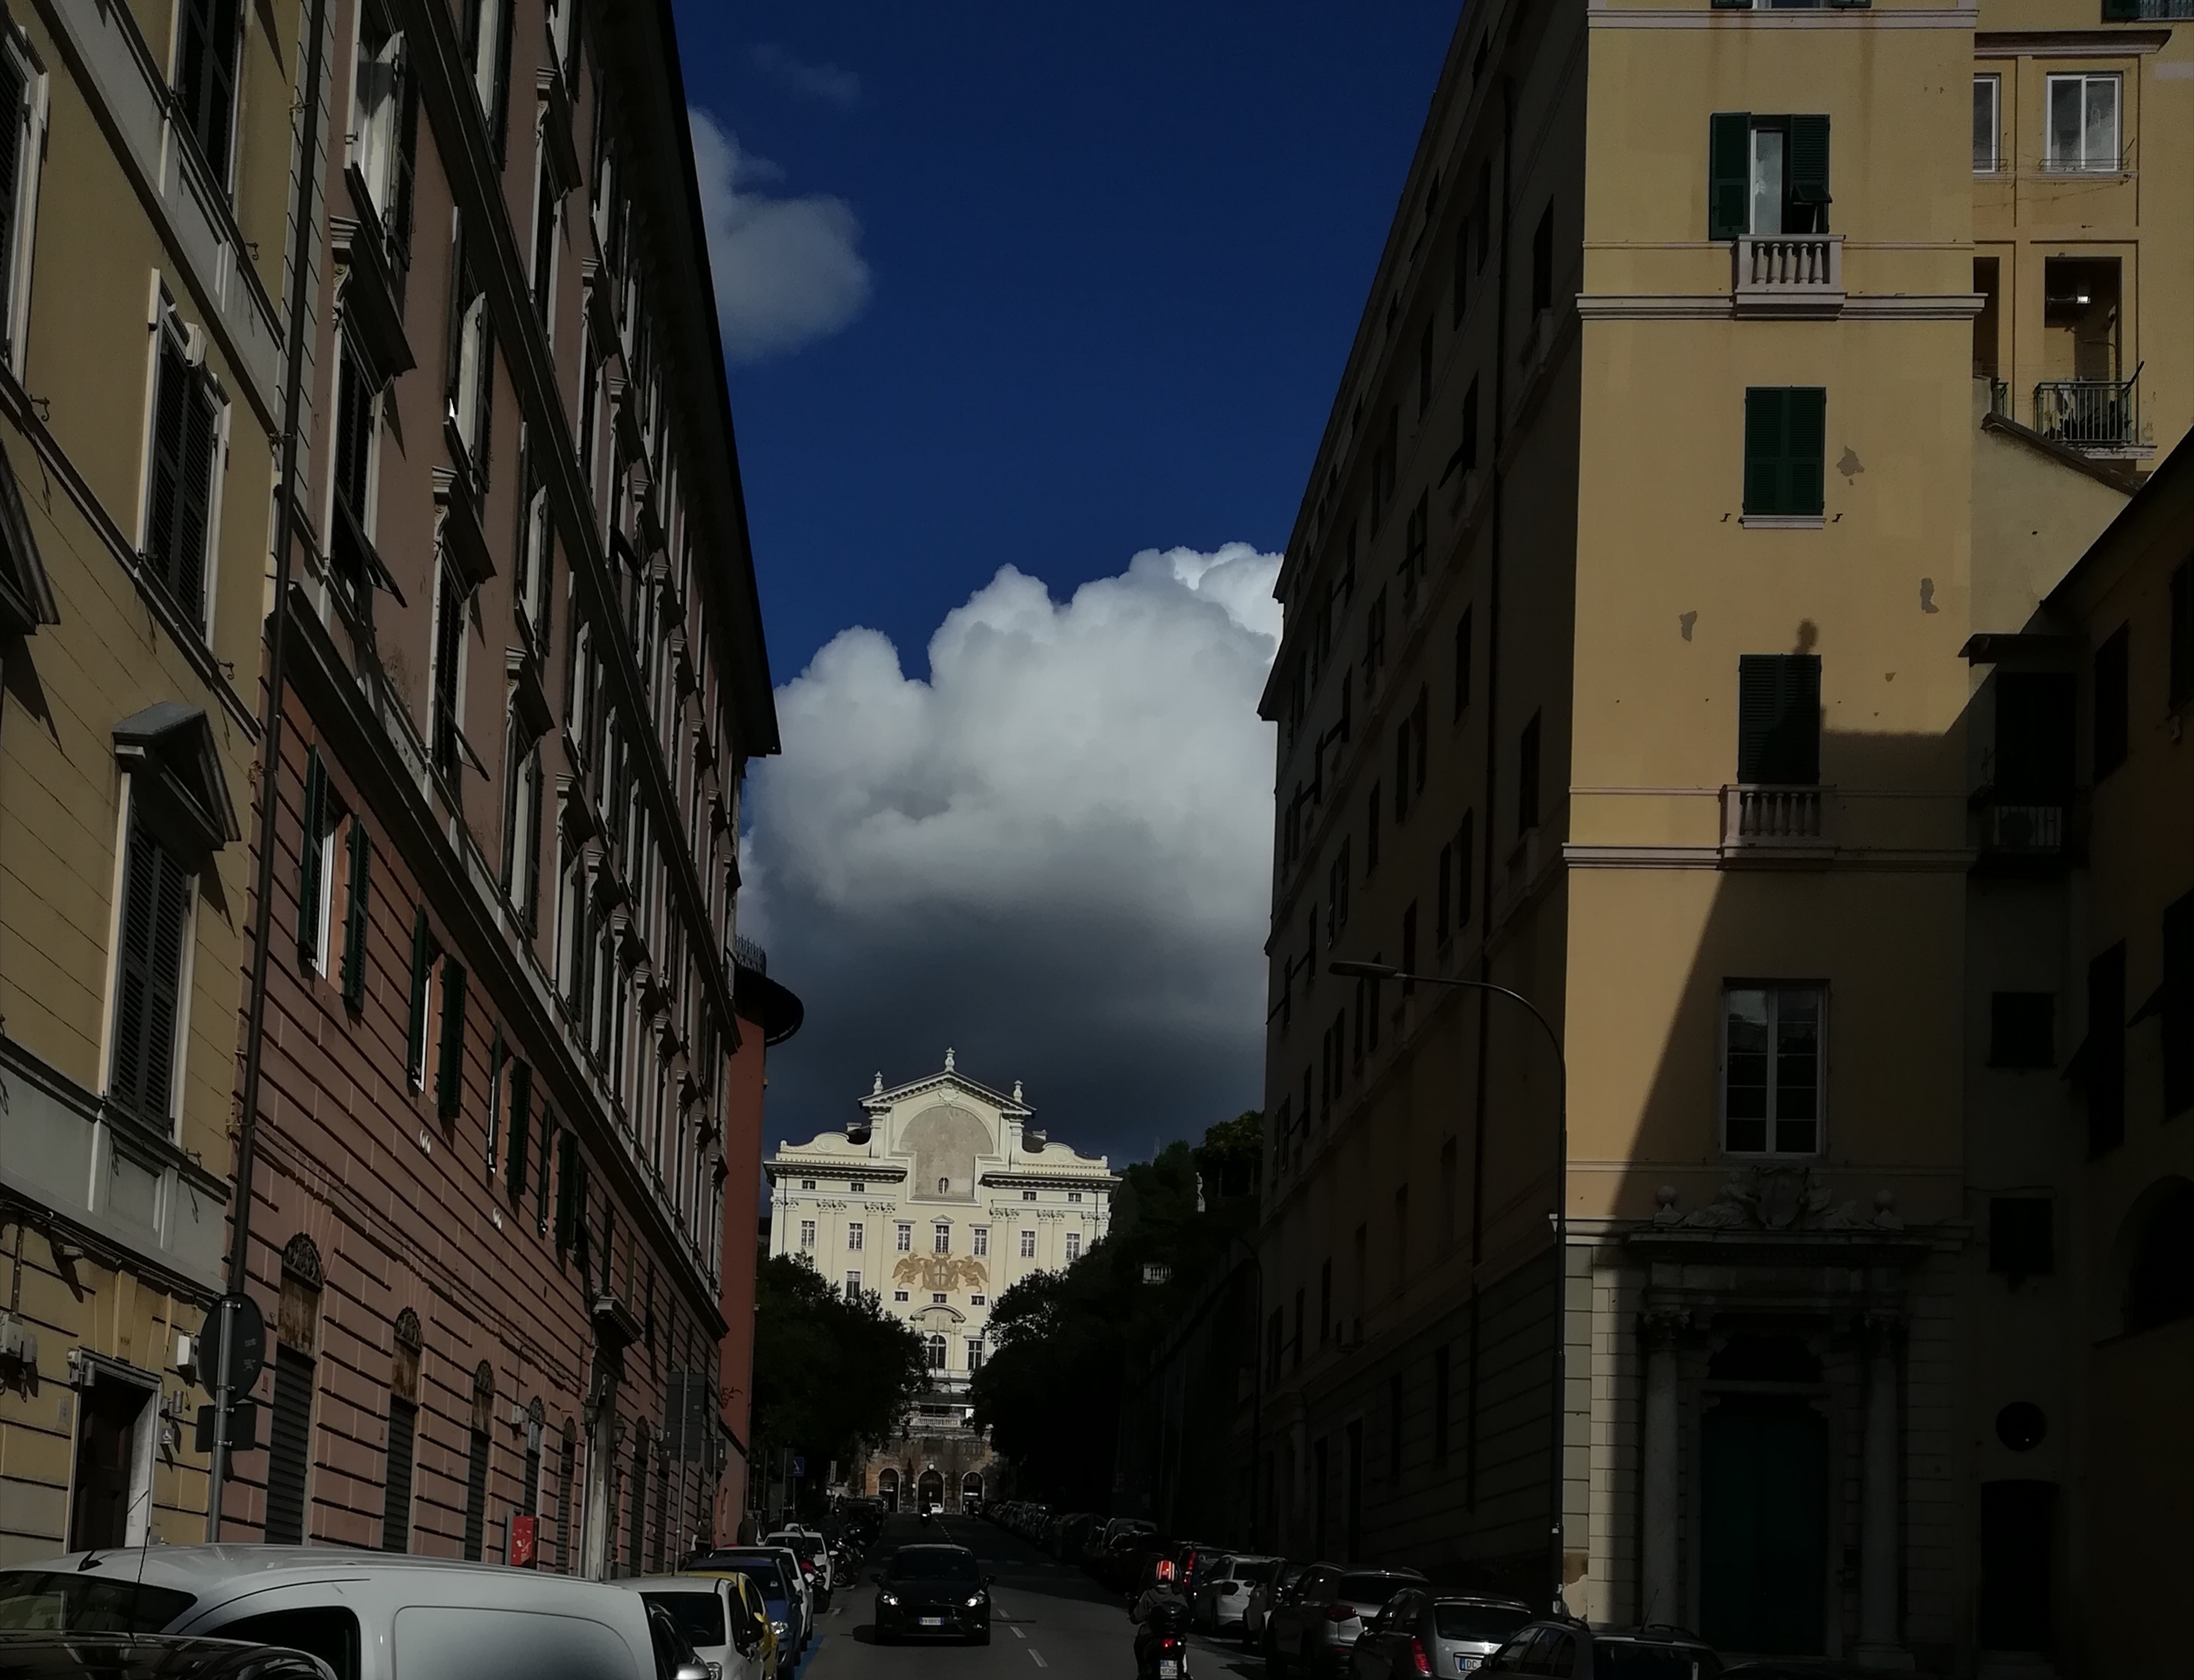 Vendita Appartamento in Genova